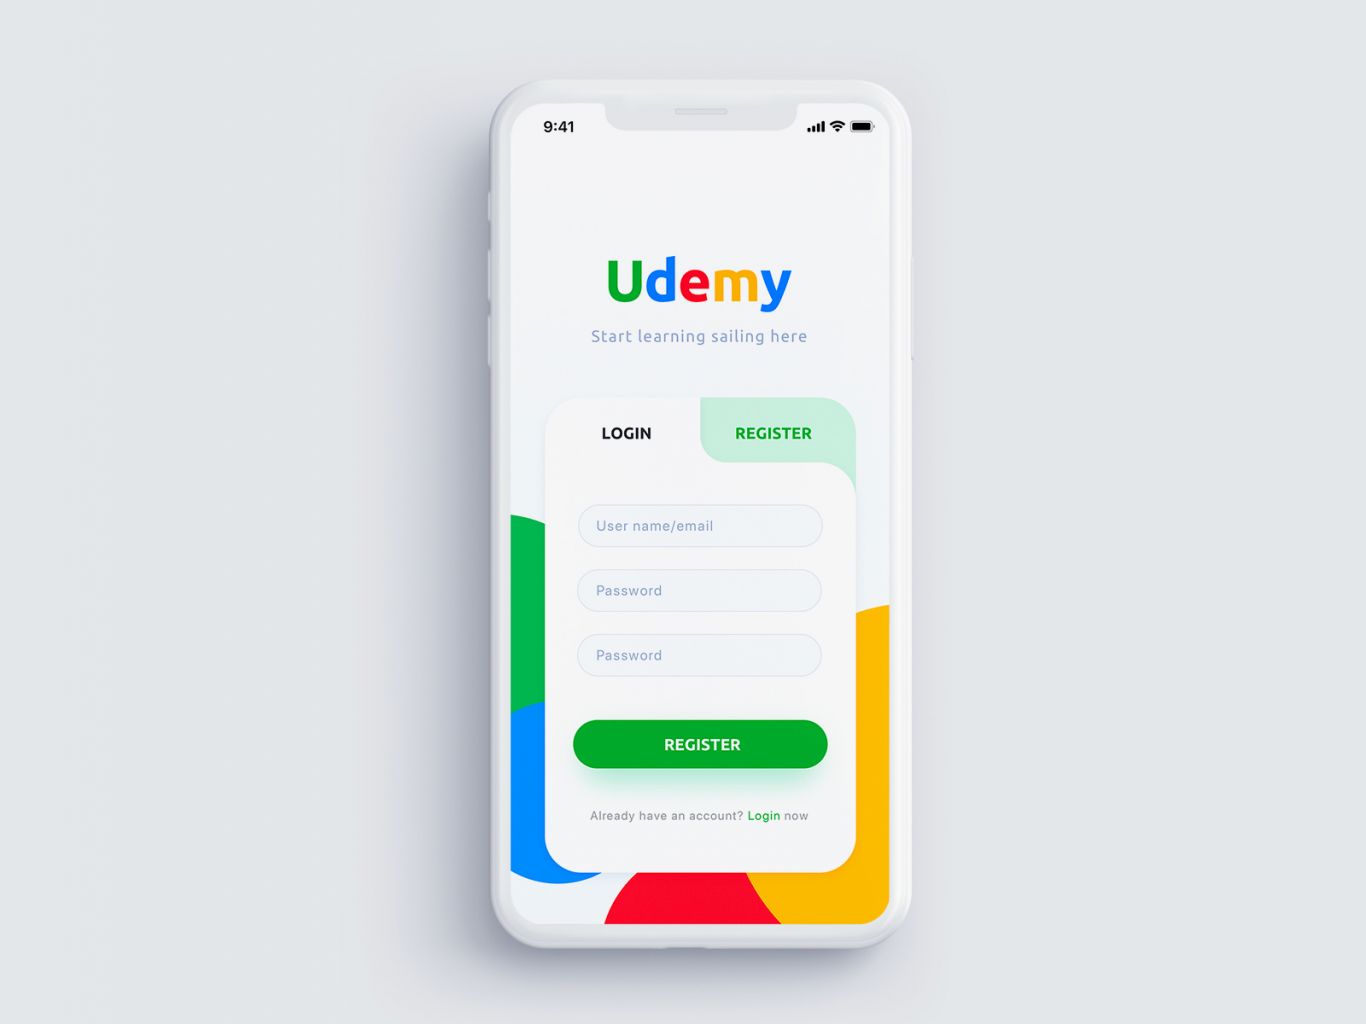 Udemy 是一家开放式在线教育